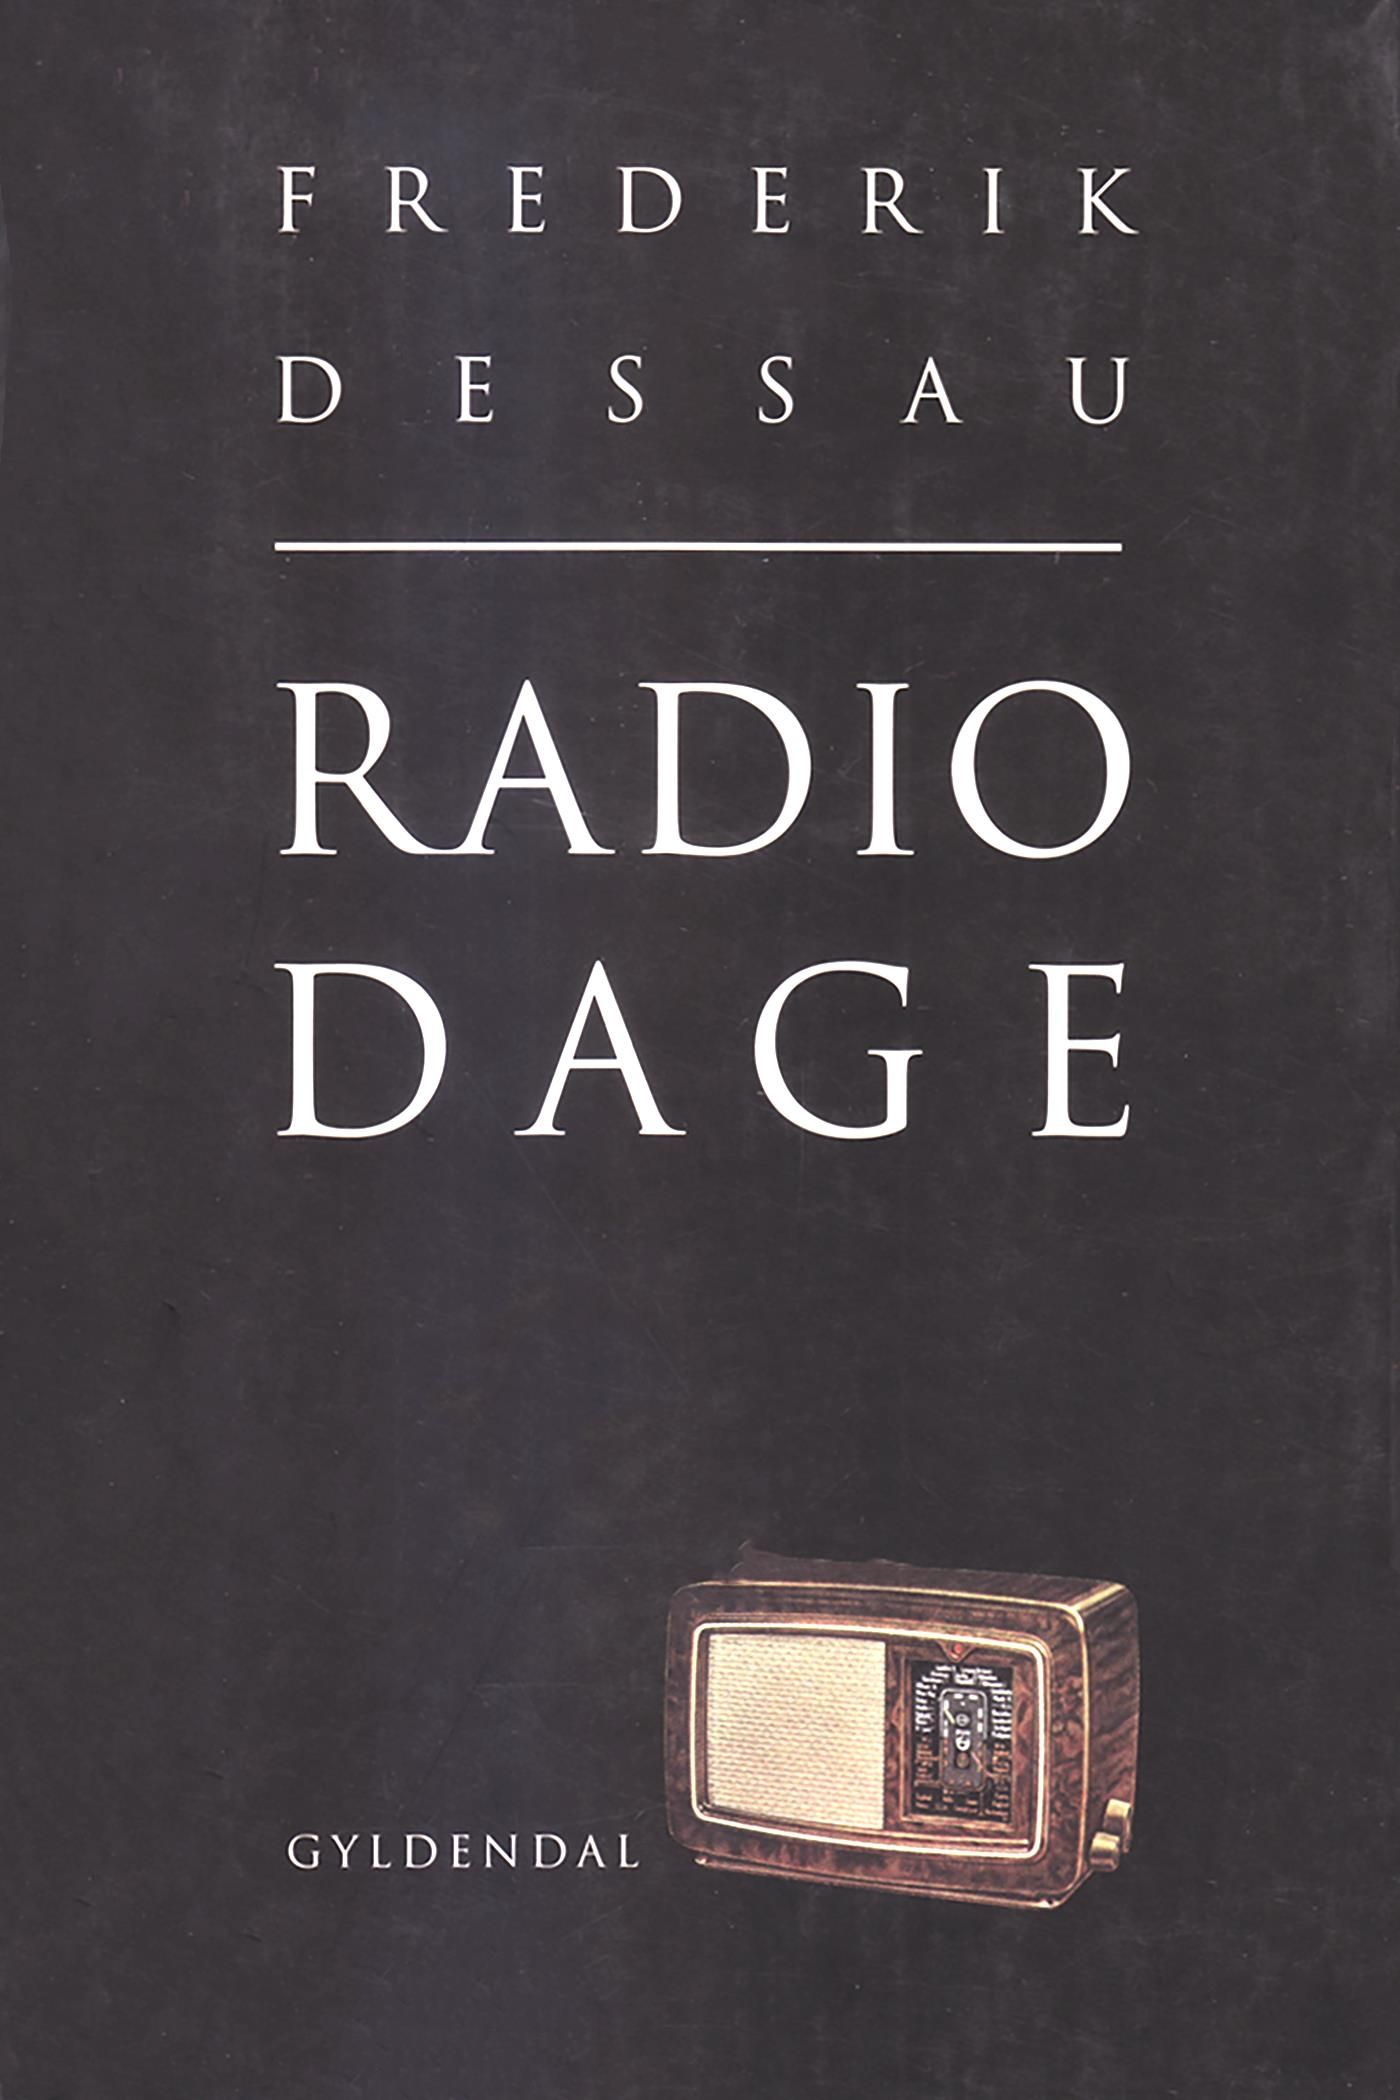 Radiodage, eBook by Frederik Dessau